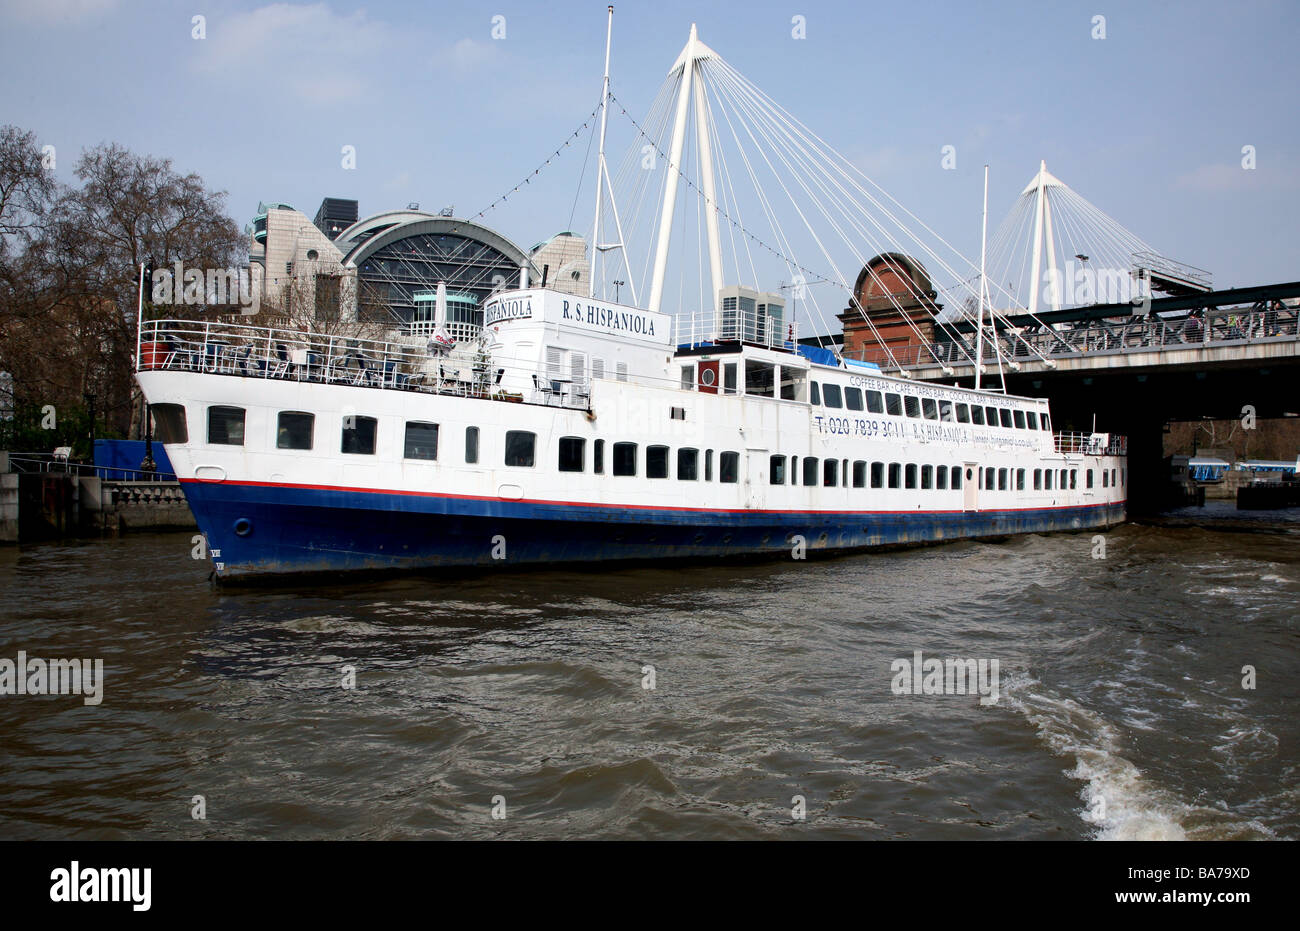 R S Hispaniola bar & restaurant ship on River Thames, London Stock Photo